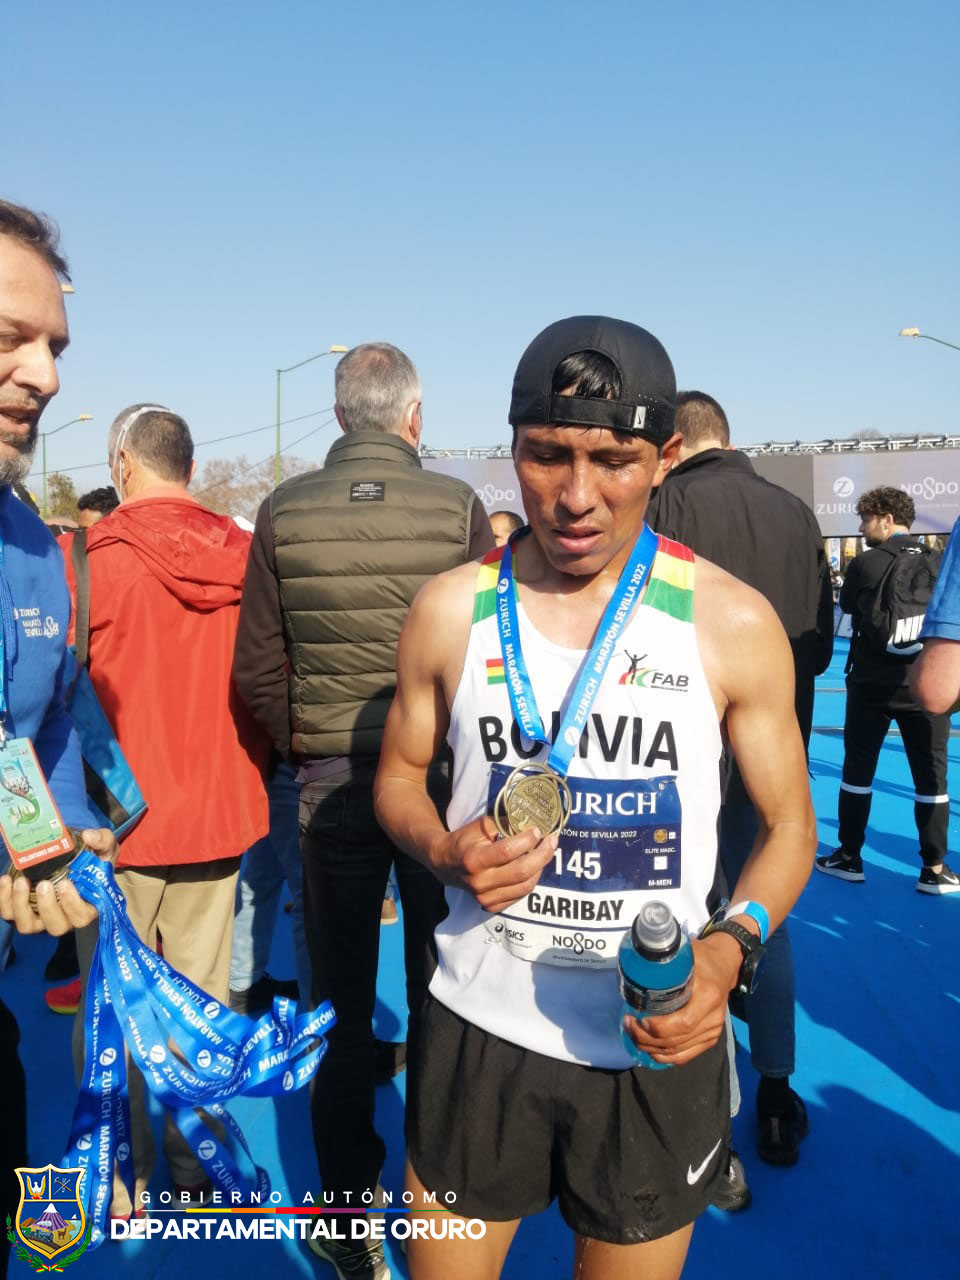 Hector Garibay supera el récord nacional en la Maratón Zúrich de Sevilla España el 20 de Febrero, con una marca de 2:09:08.